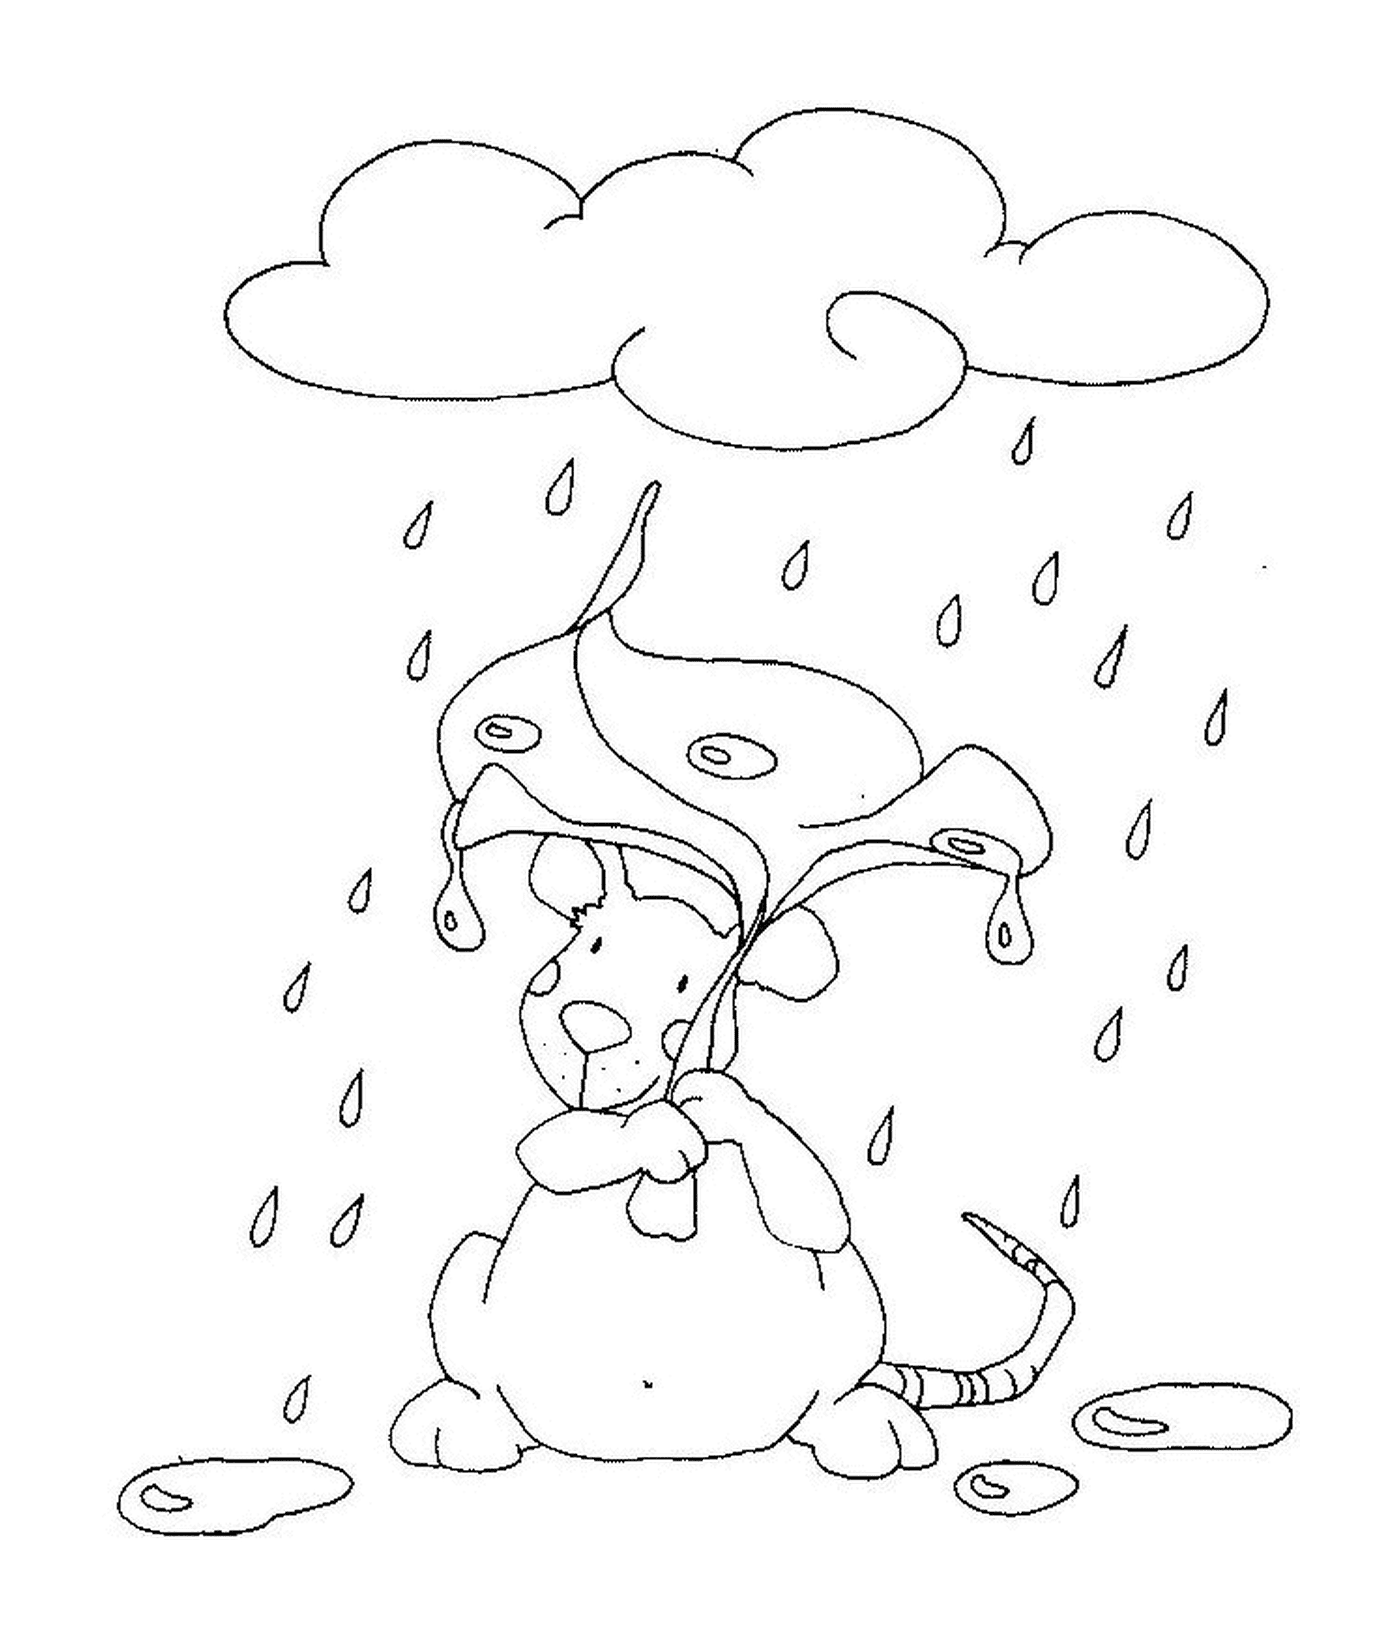  Un topo sotto la pioggia 